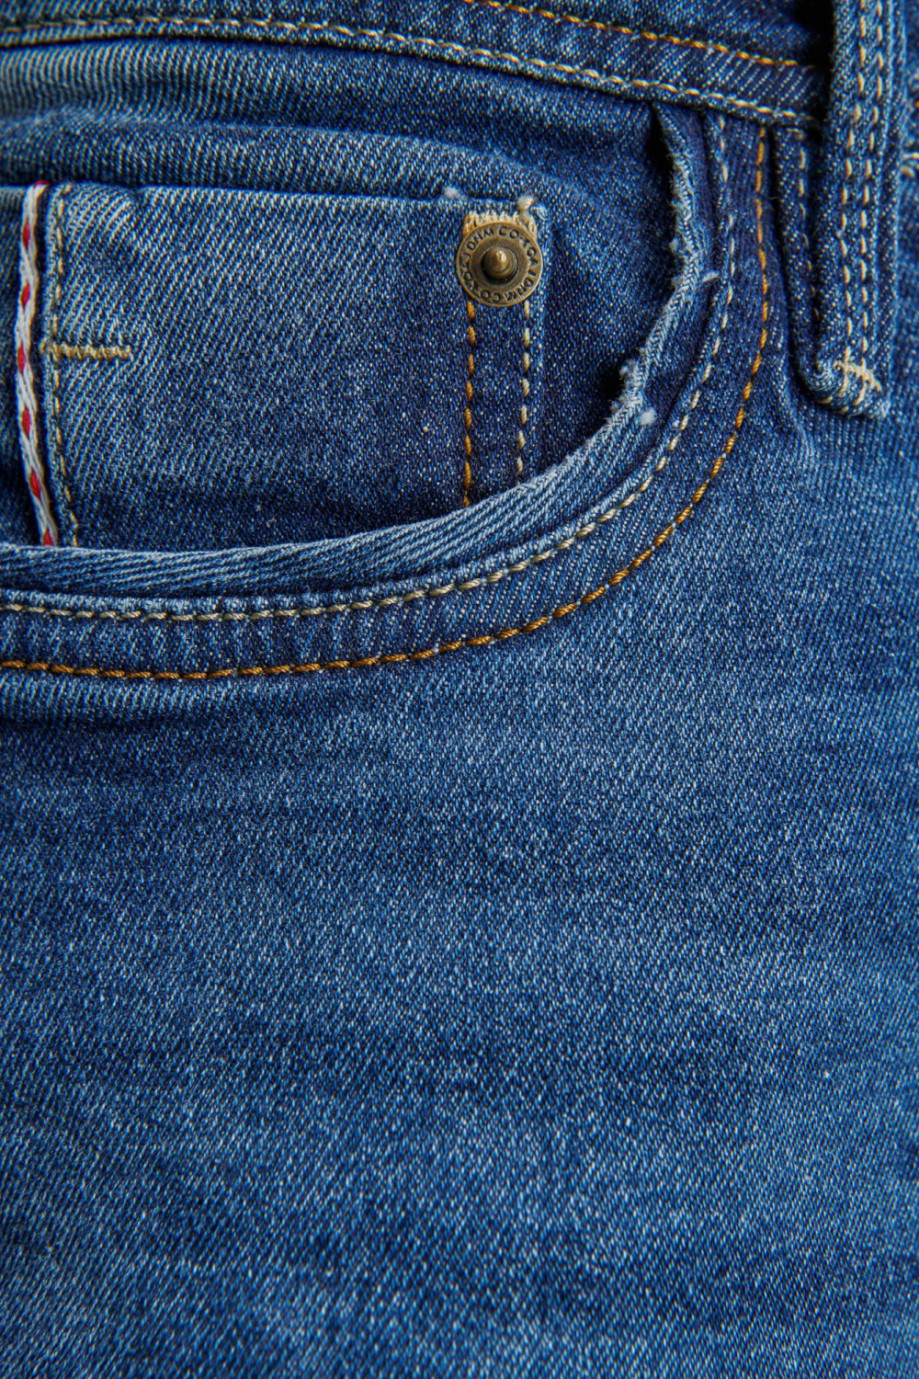 Jean azul oscuro tipo skinny fit con detalles en láser